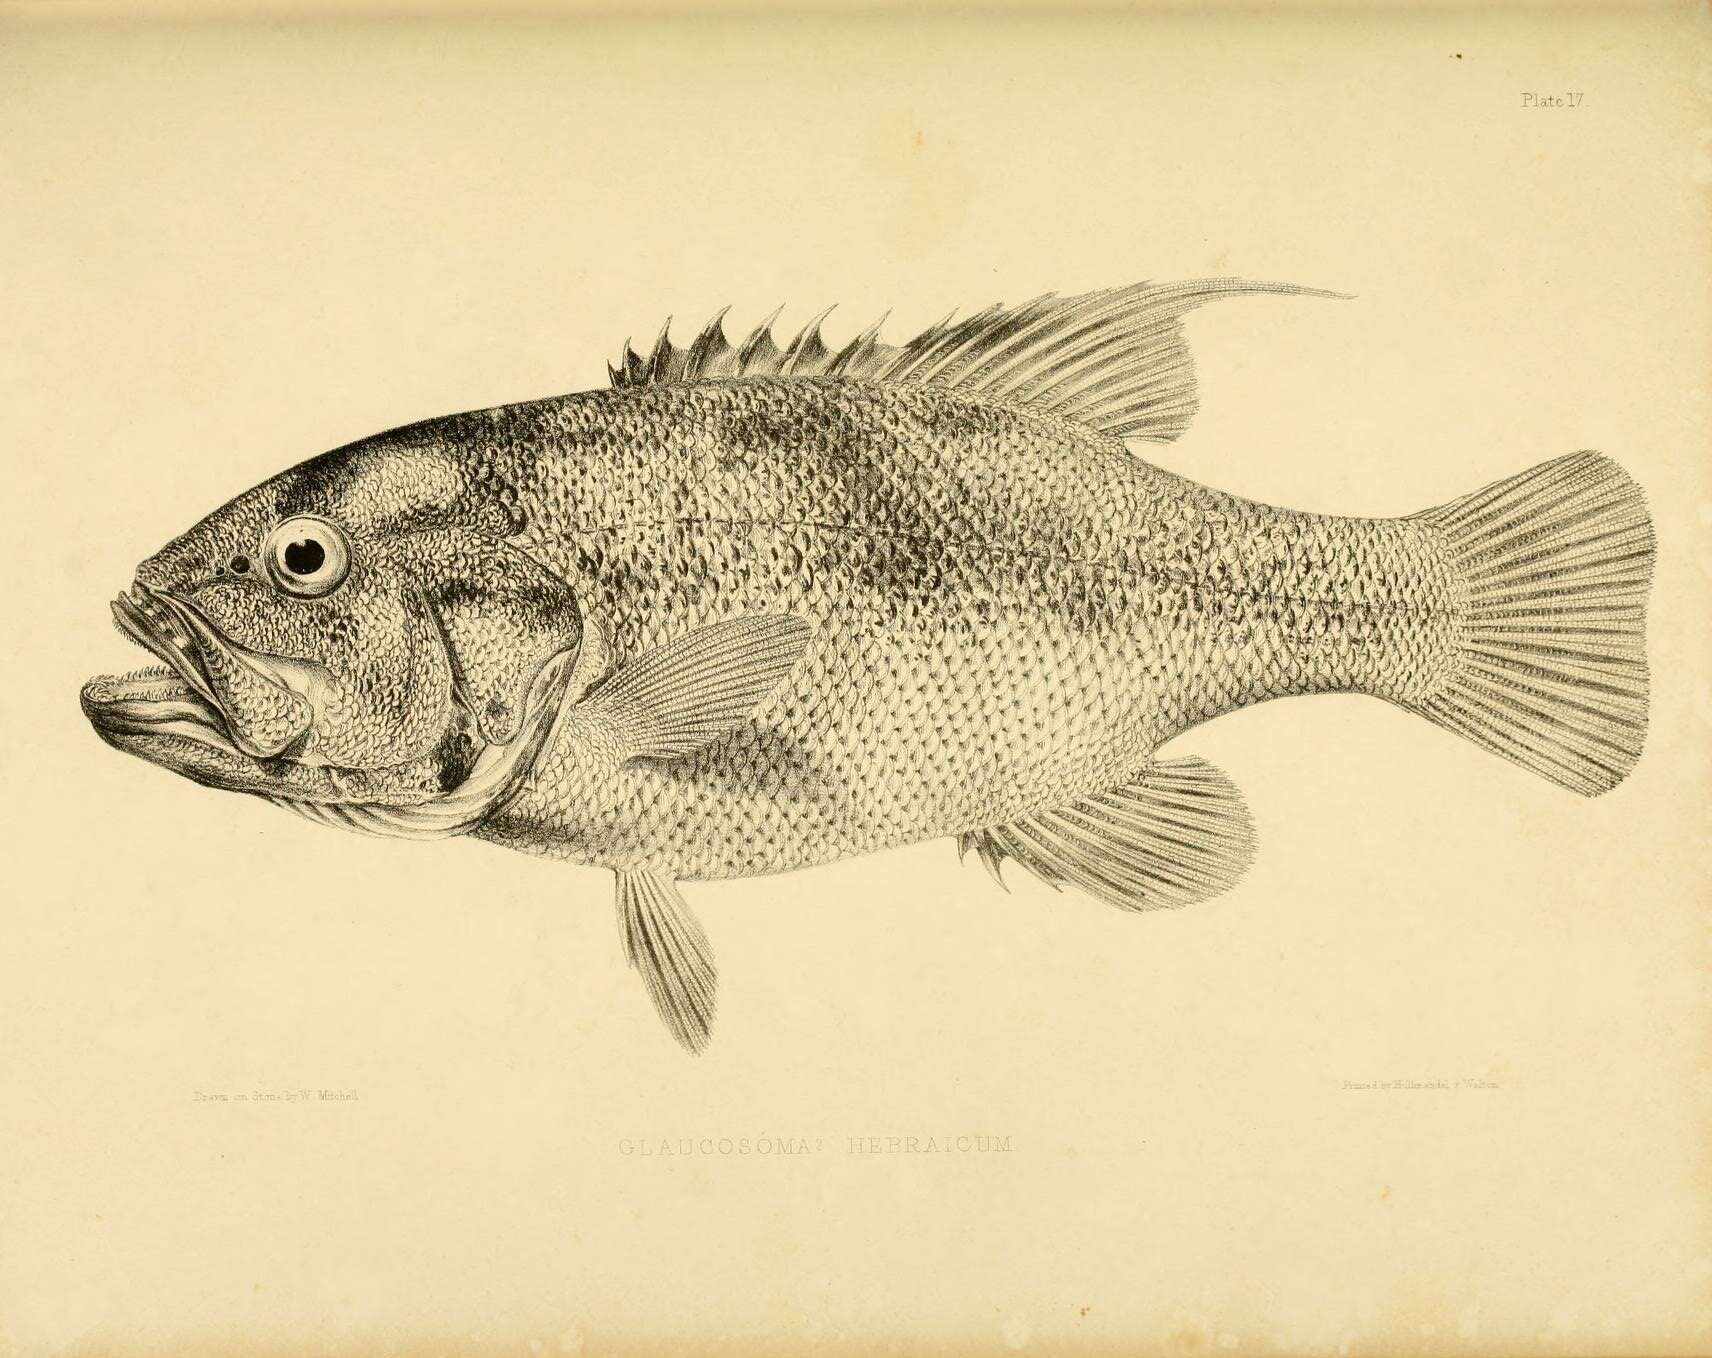 Image of Dhufish